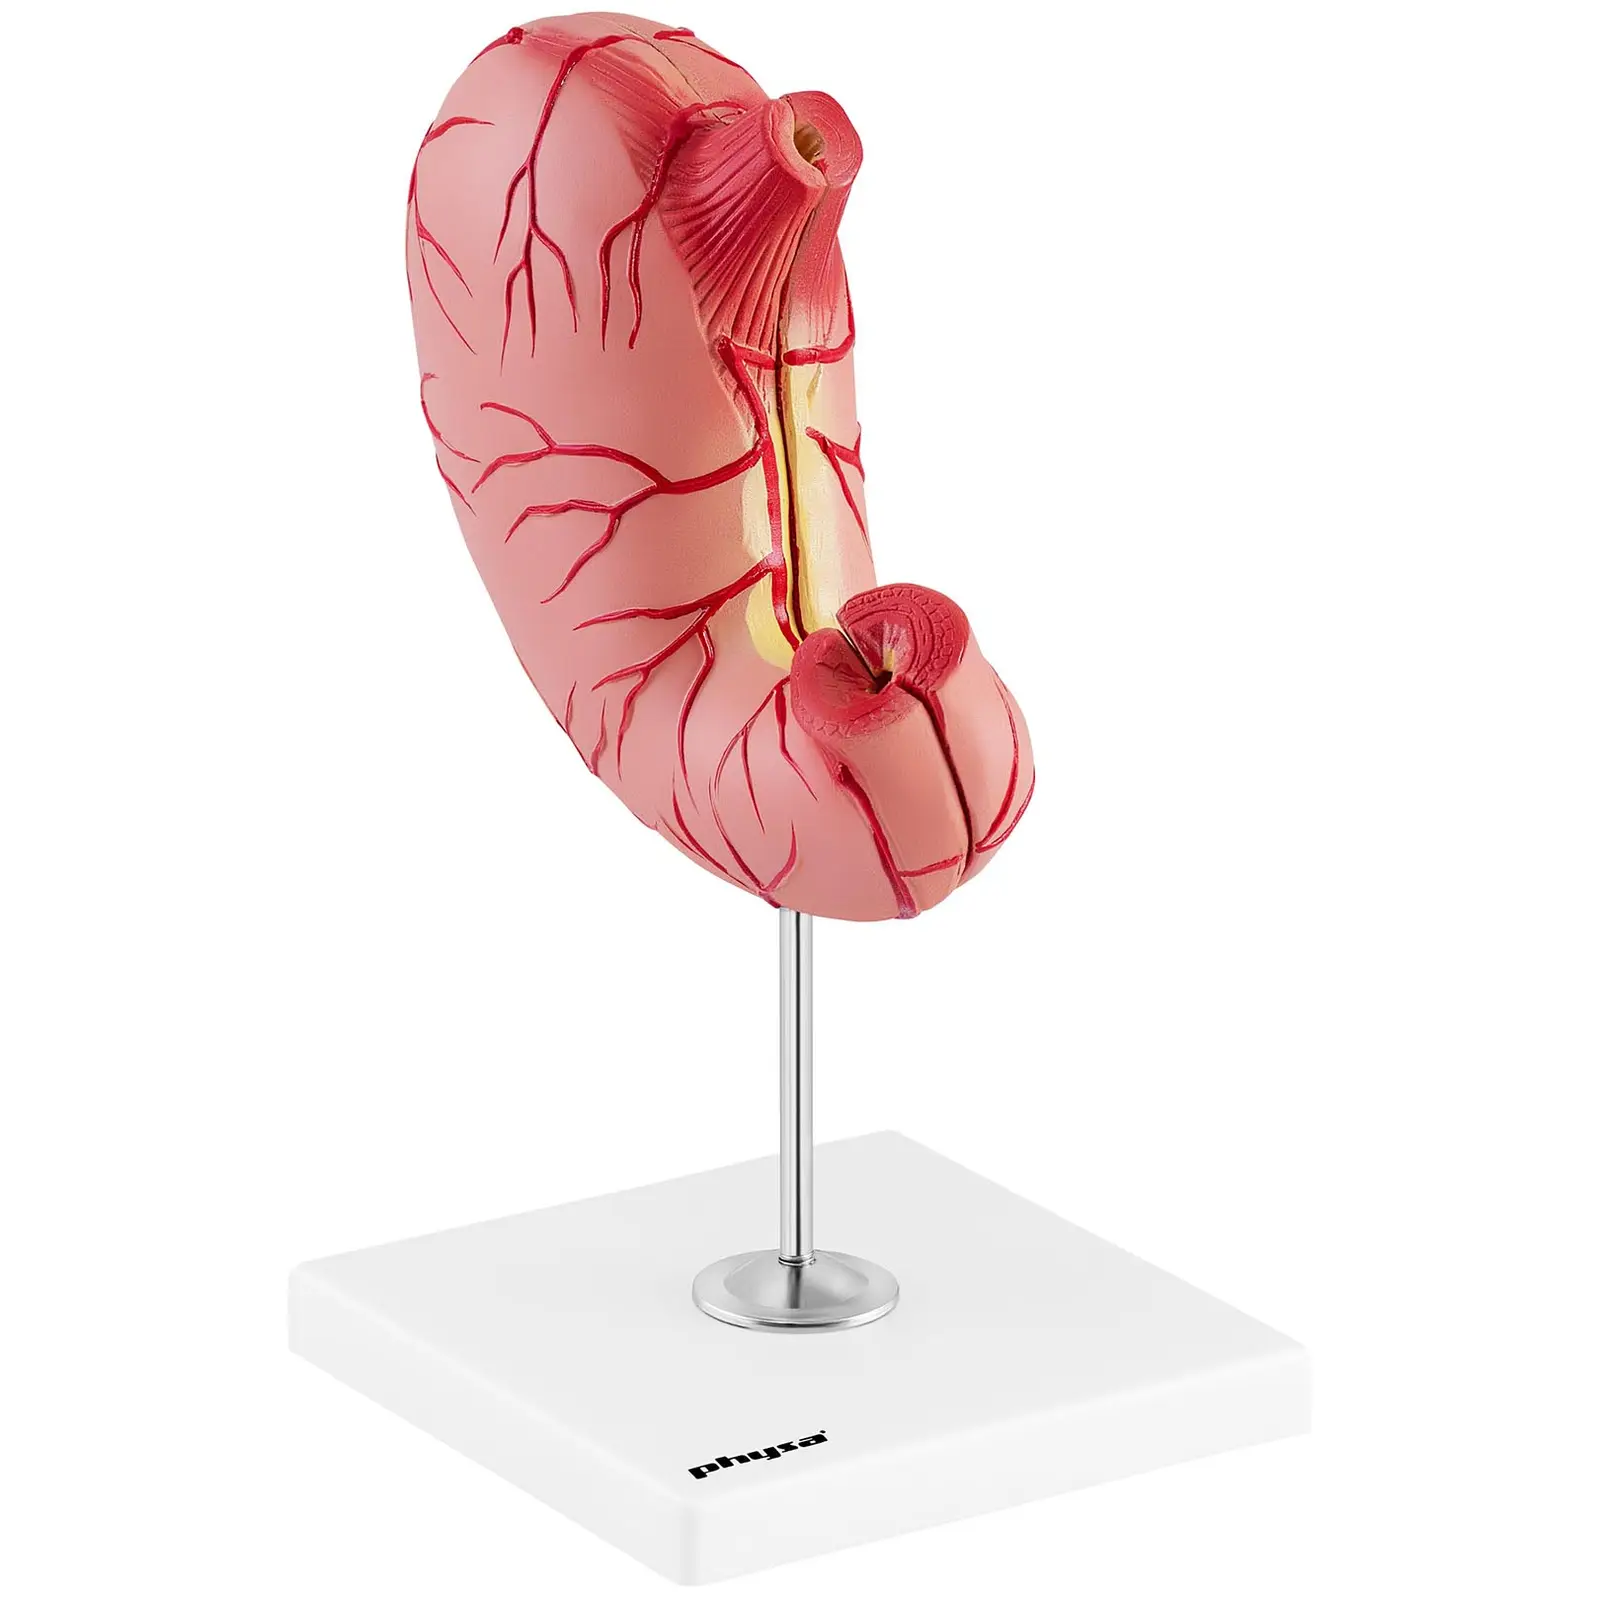 Magsäck - Anatomisk modell - 2 delar - Originalstorlek